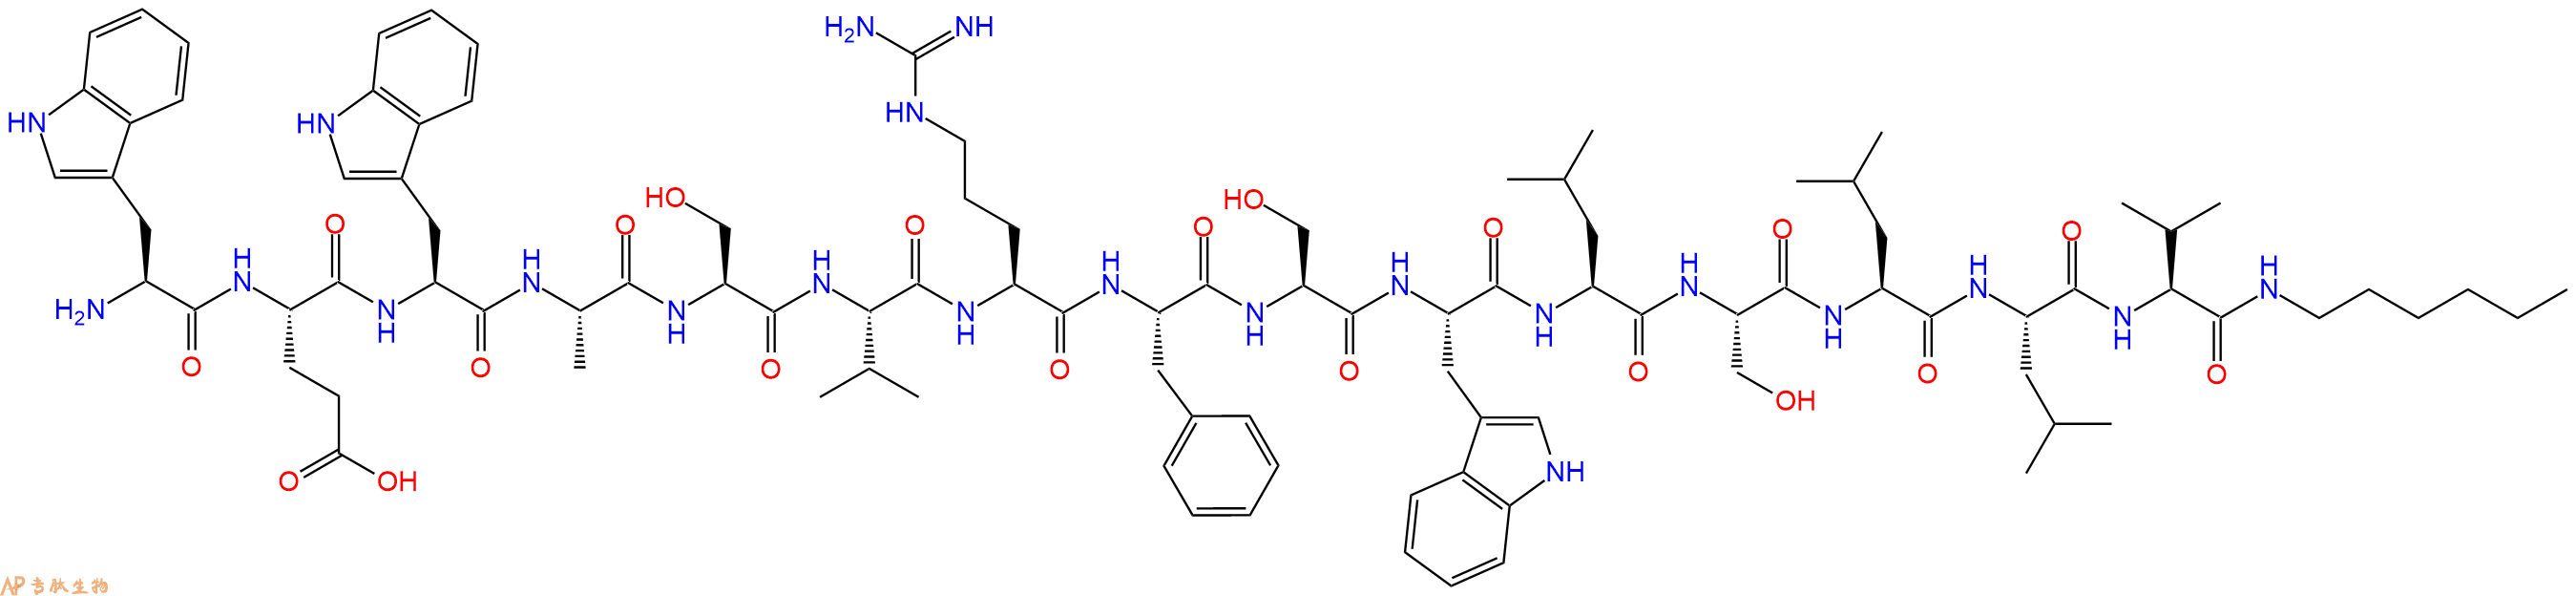 专肽生物产品H2N-Trp-Glu-Trp-Ala-Ser-Val-Arg-Phe-Ser-Trp-Leu-Se